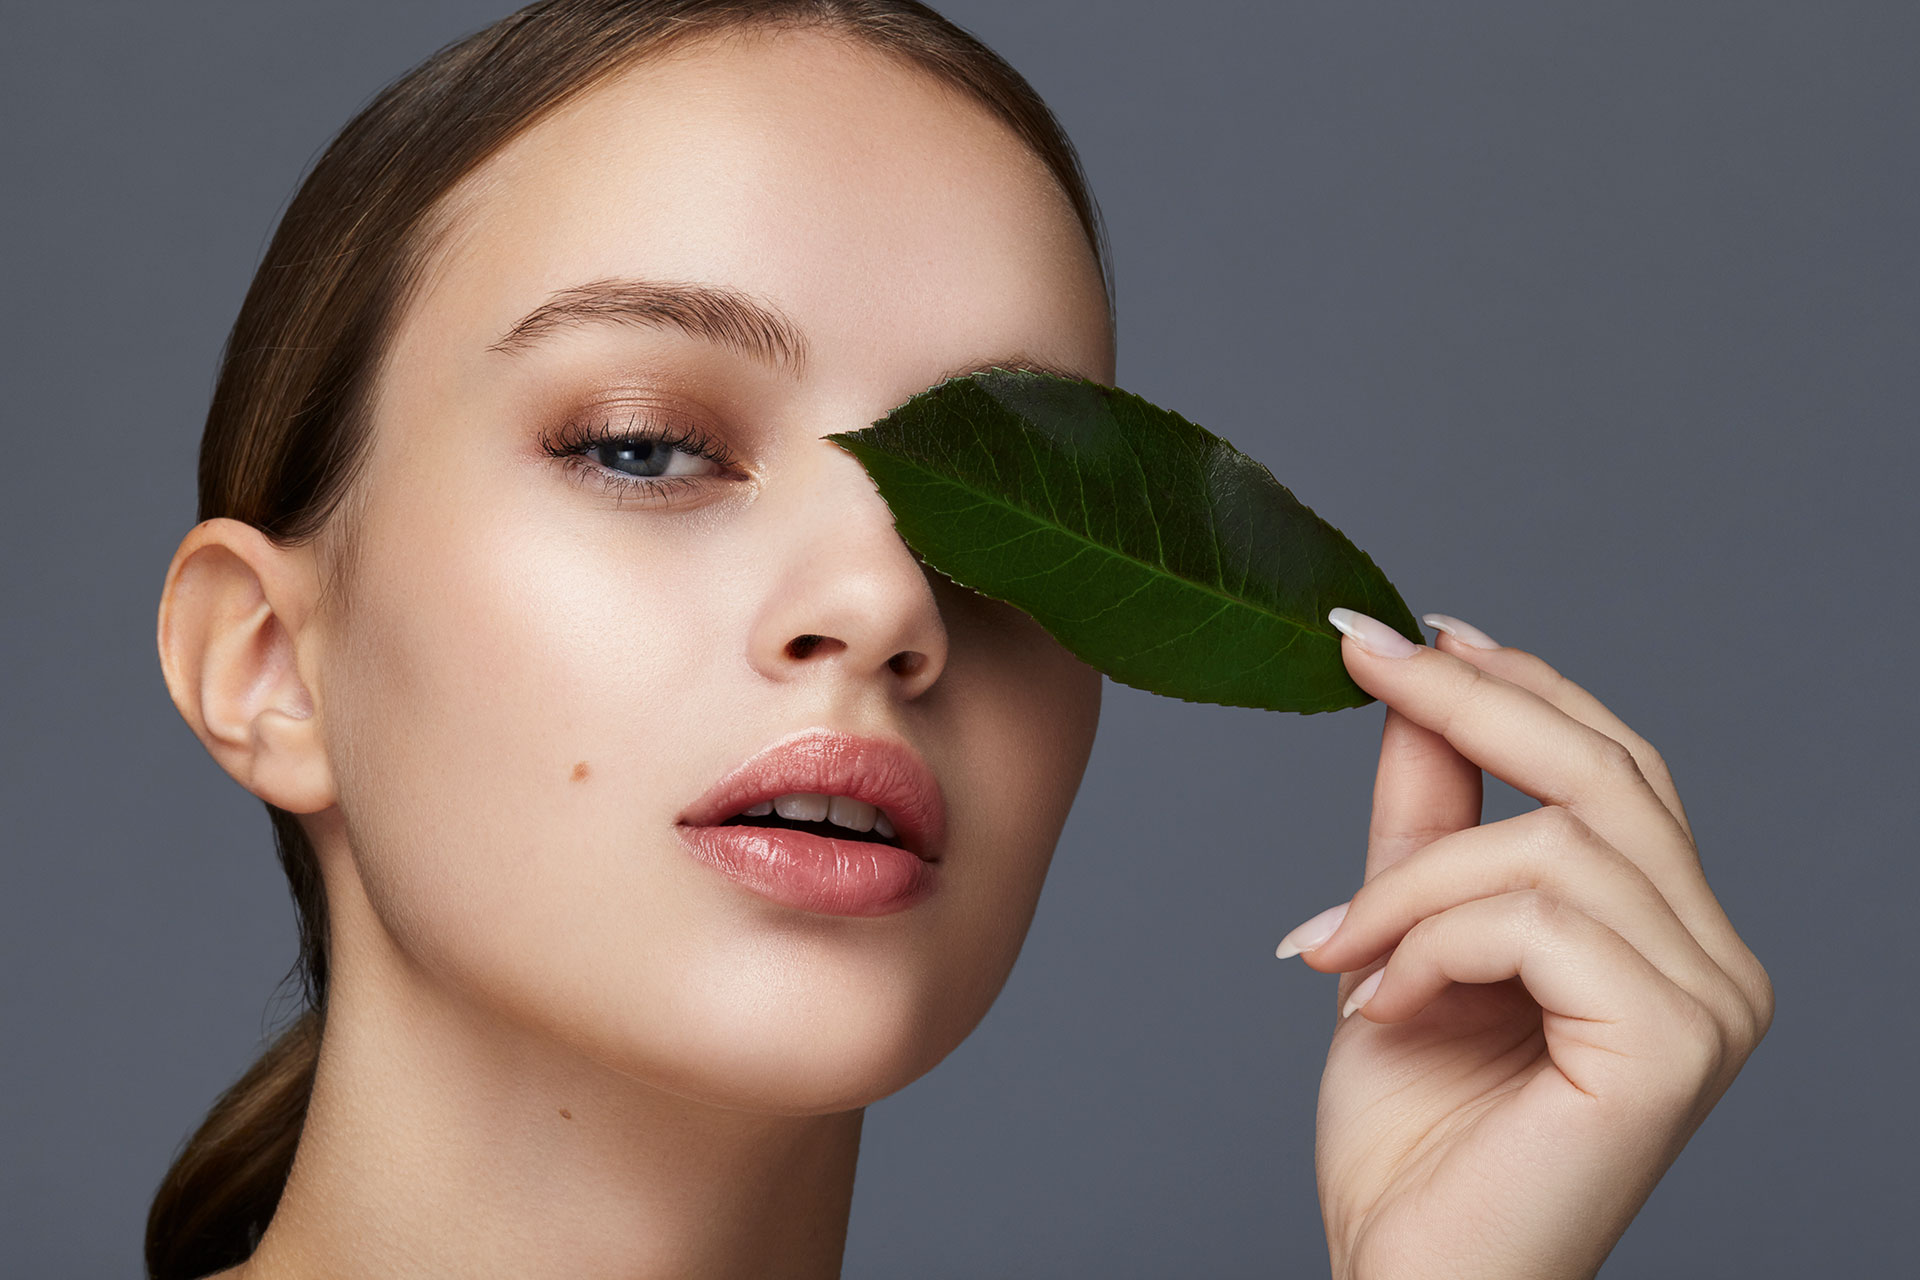 Belleza sustentable: ¿de qué se trata la cosmética natural? - Infobae